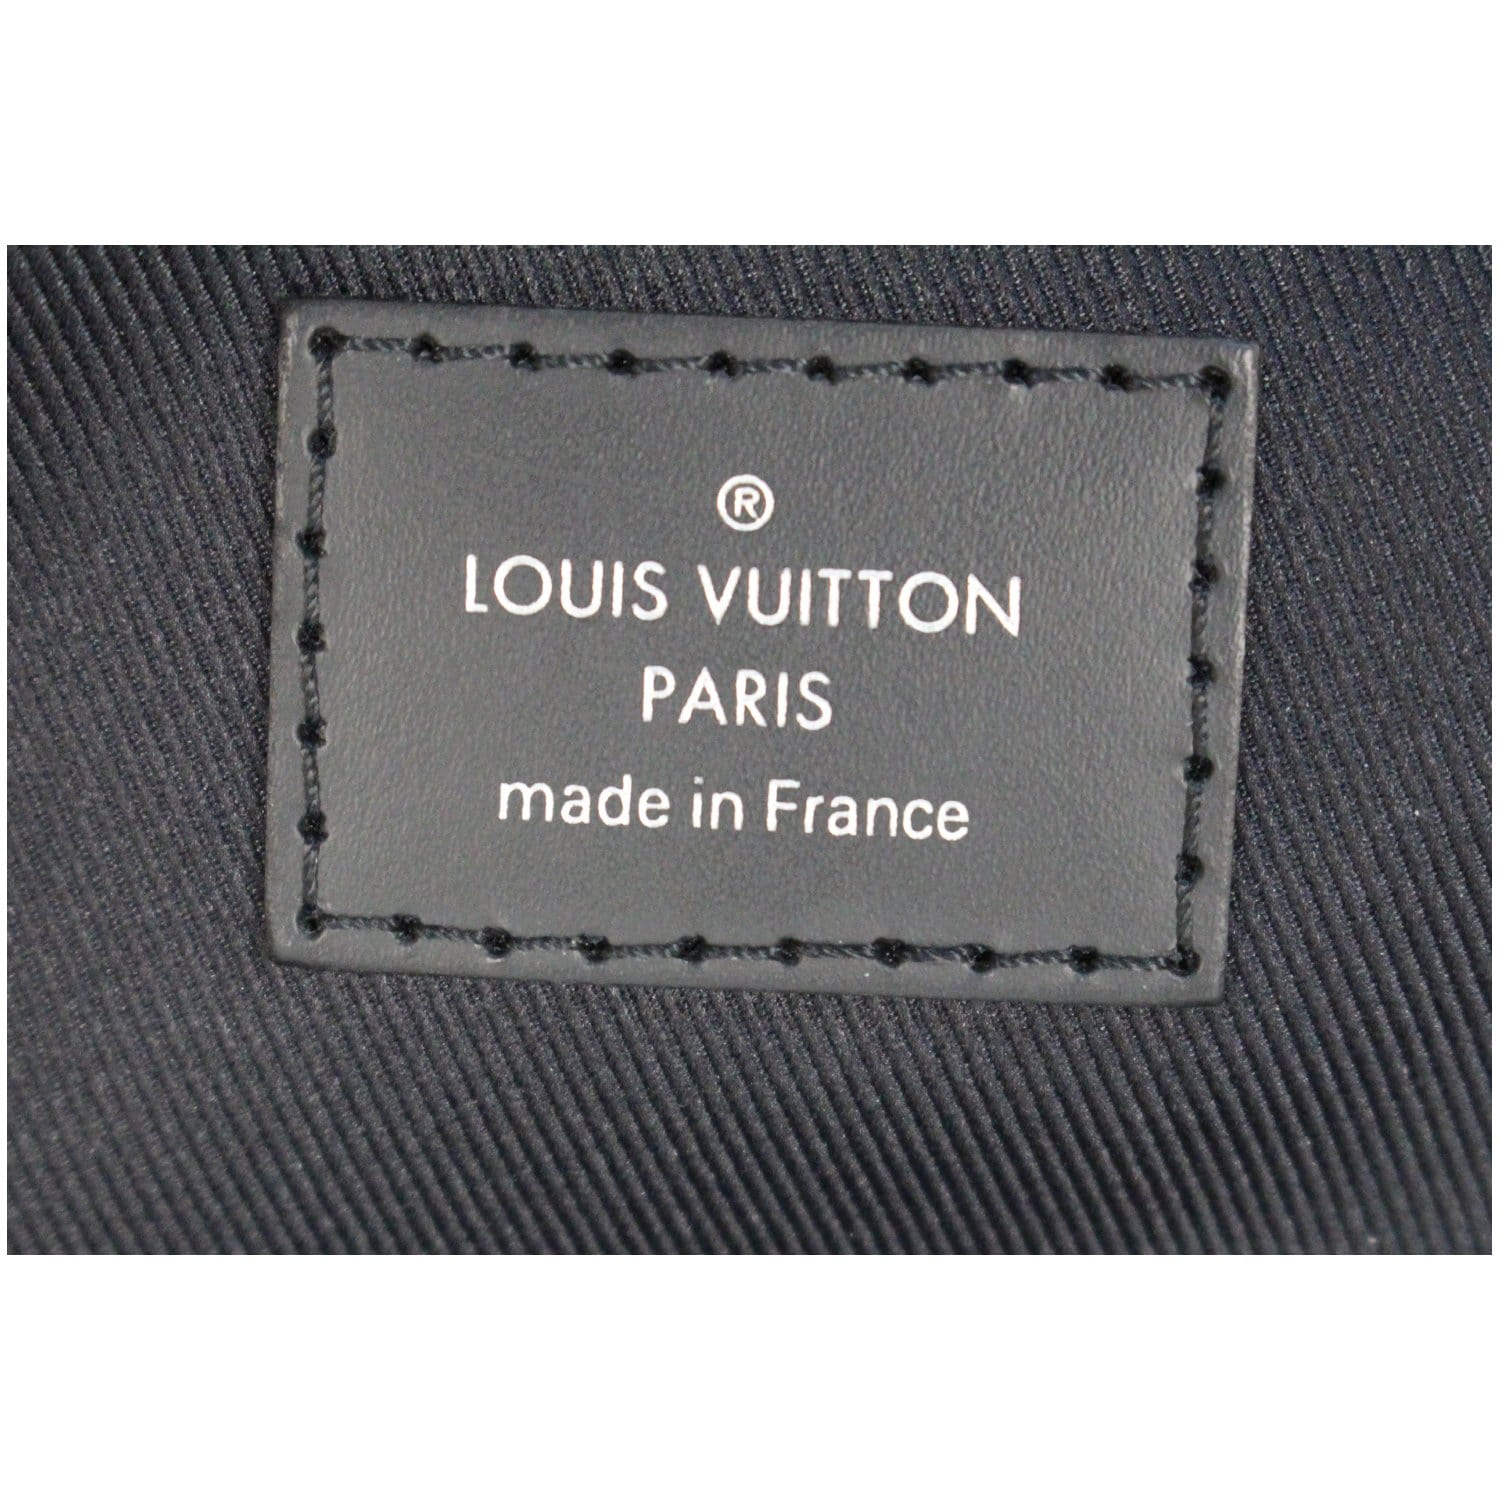 ขายแล้วค่ะ Louis Vuitton Graphite Sling Bag มือสองสภาพสวย 2019